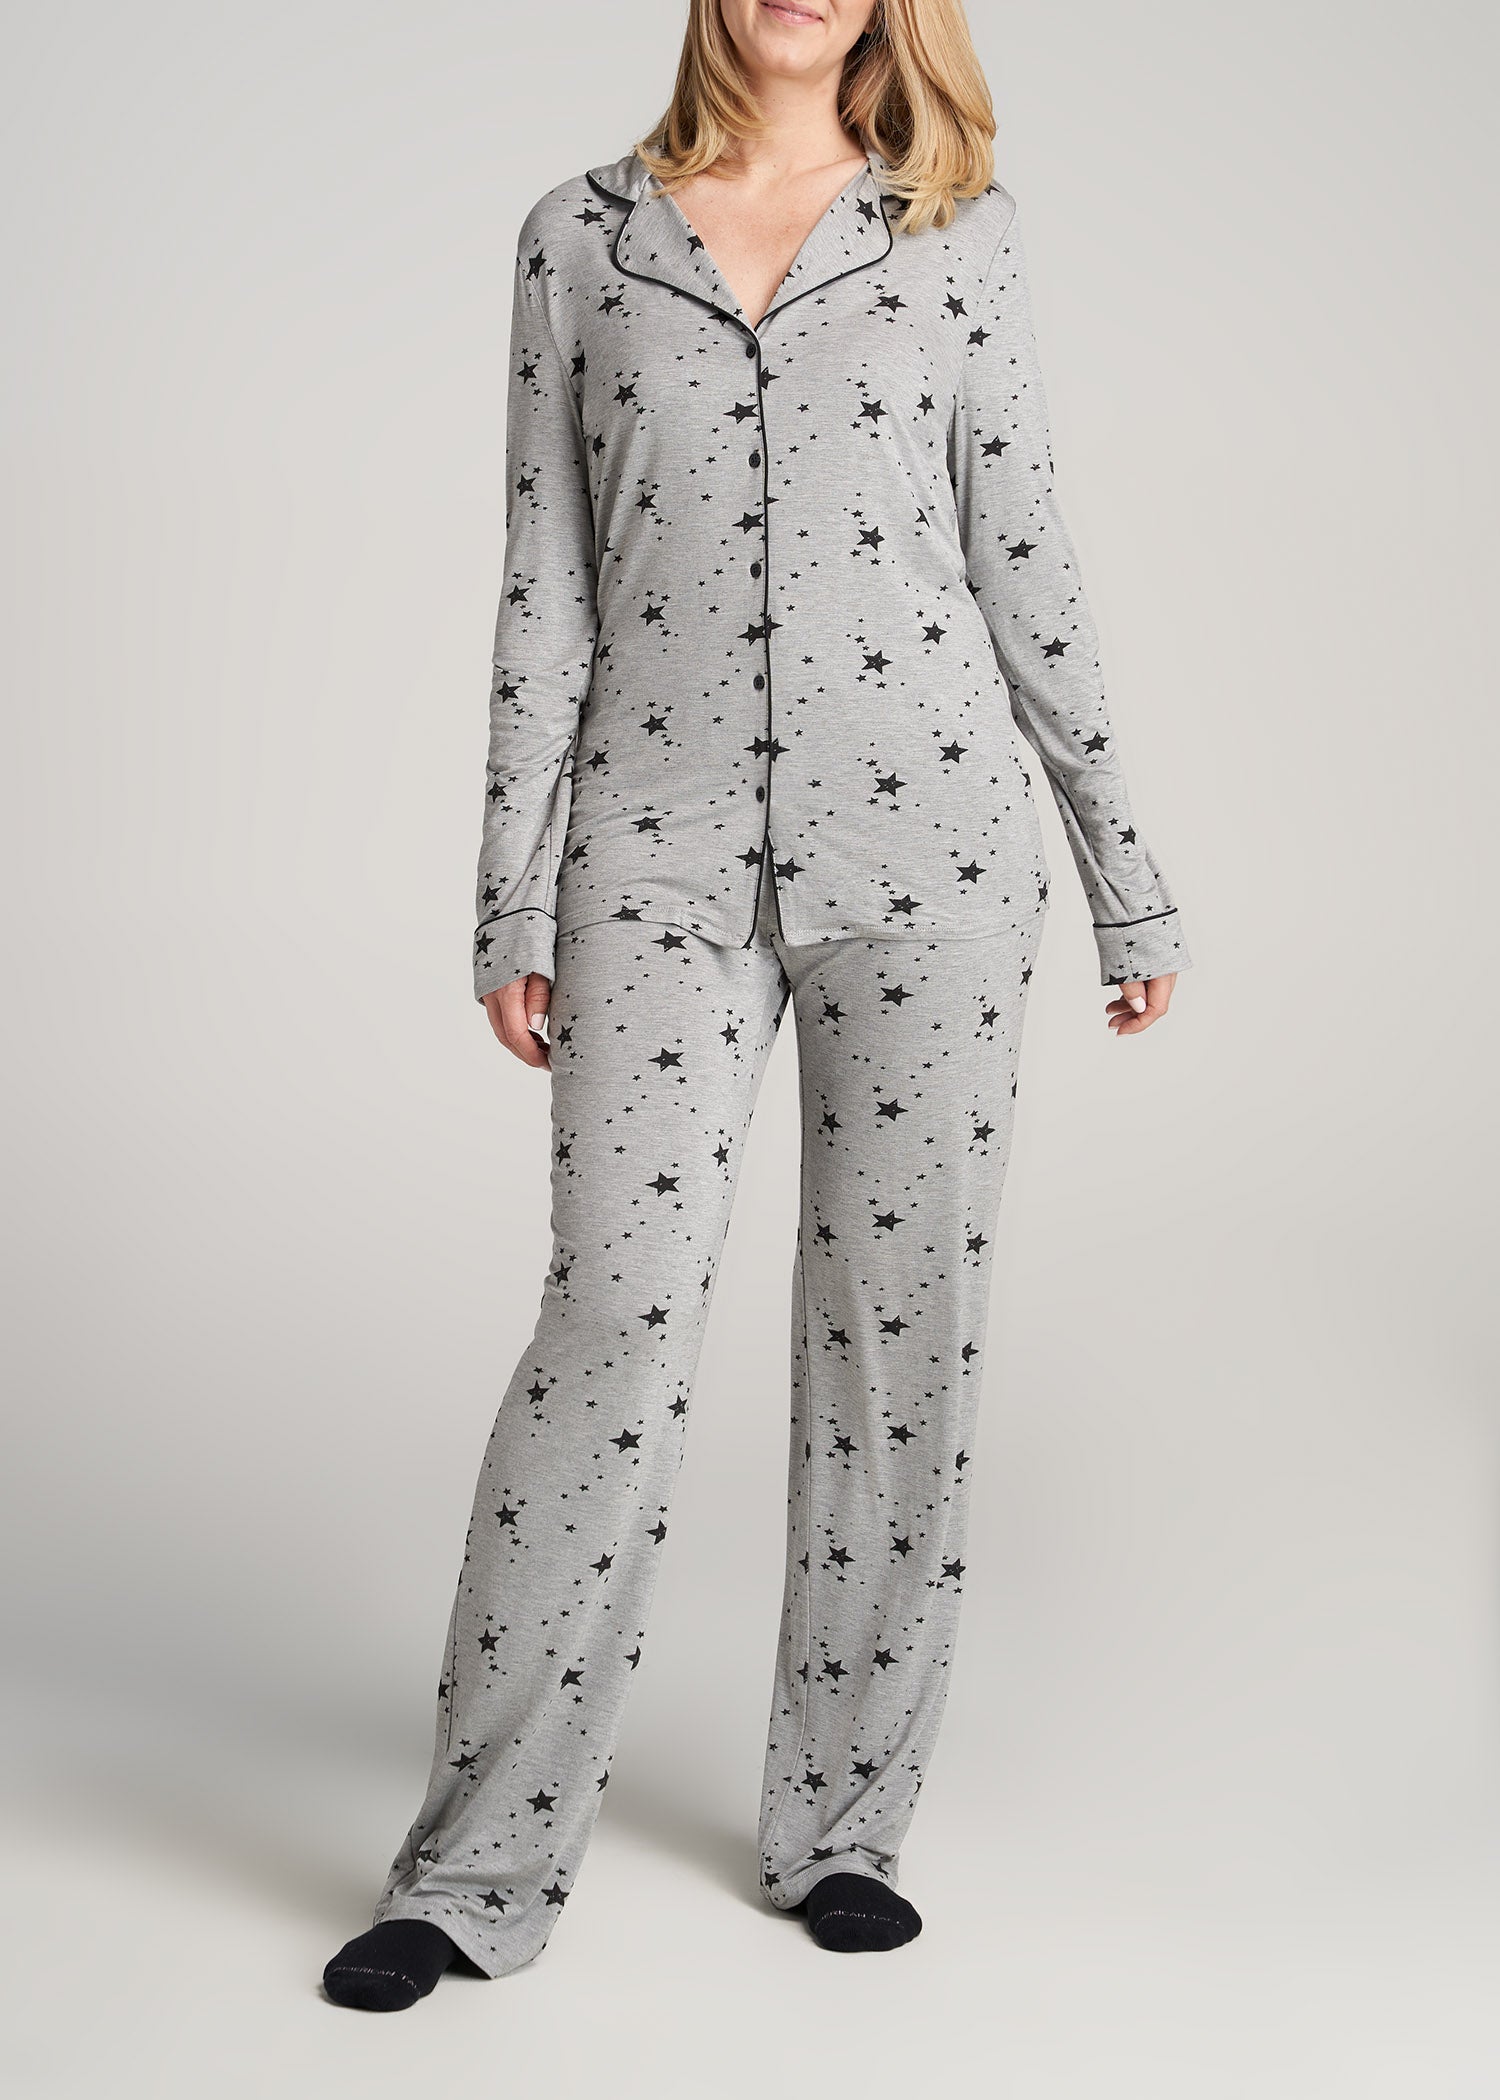 Satin Pajamas Soft Polyester Sleep Sets Two Piece Winter - Temu